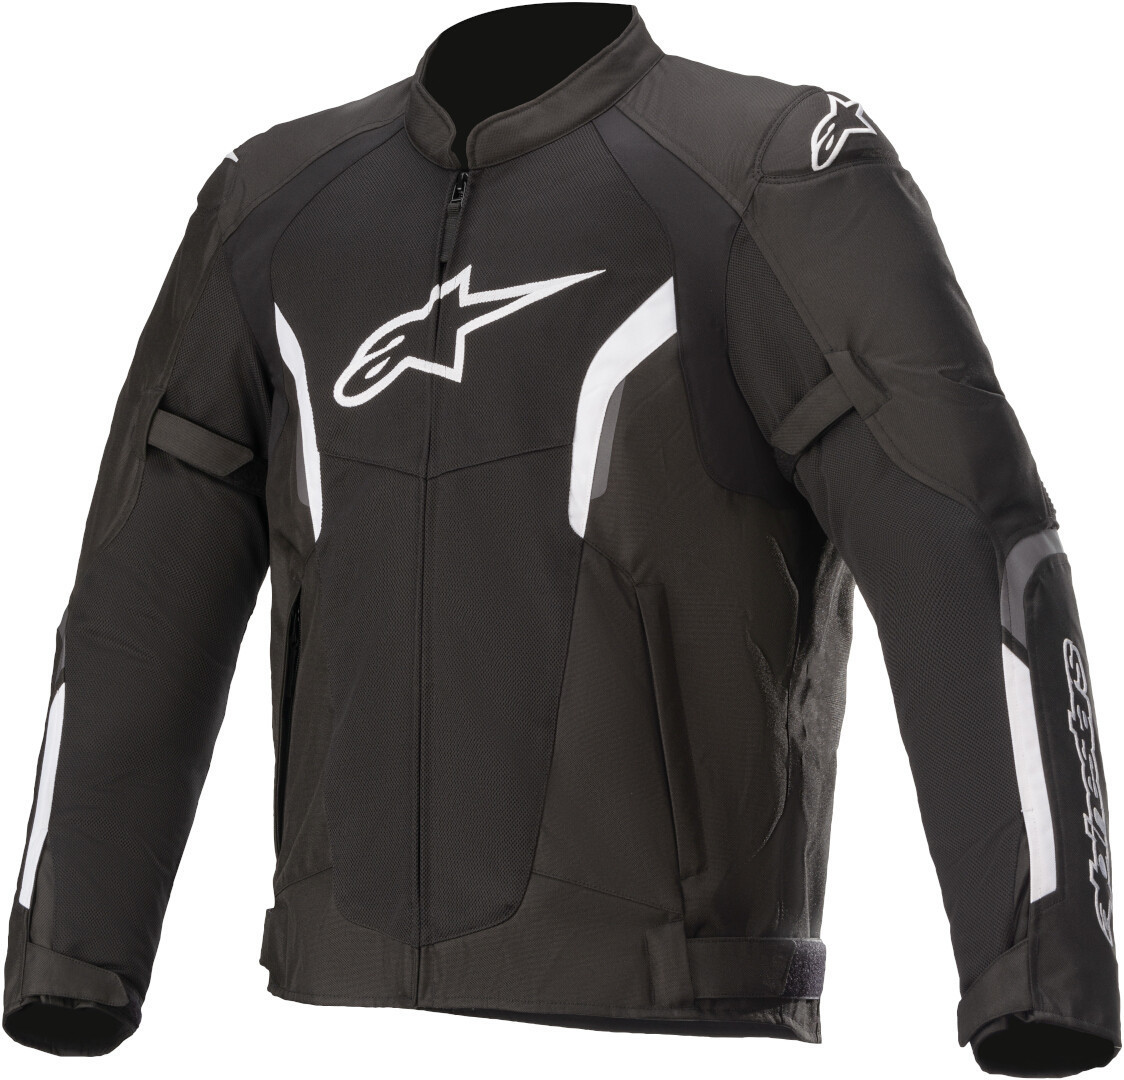 Куртка Alpinestars AST-1 V2 Air мотоциклетная текстильная, черно-белая текстильная куртка для мотоцикла ast 1 v2 air alpinestars черный желтый